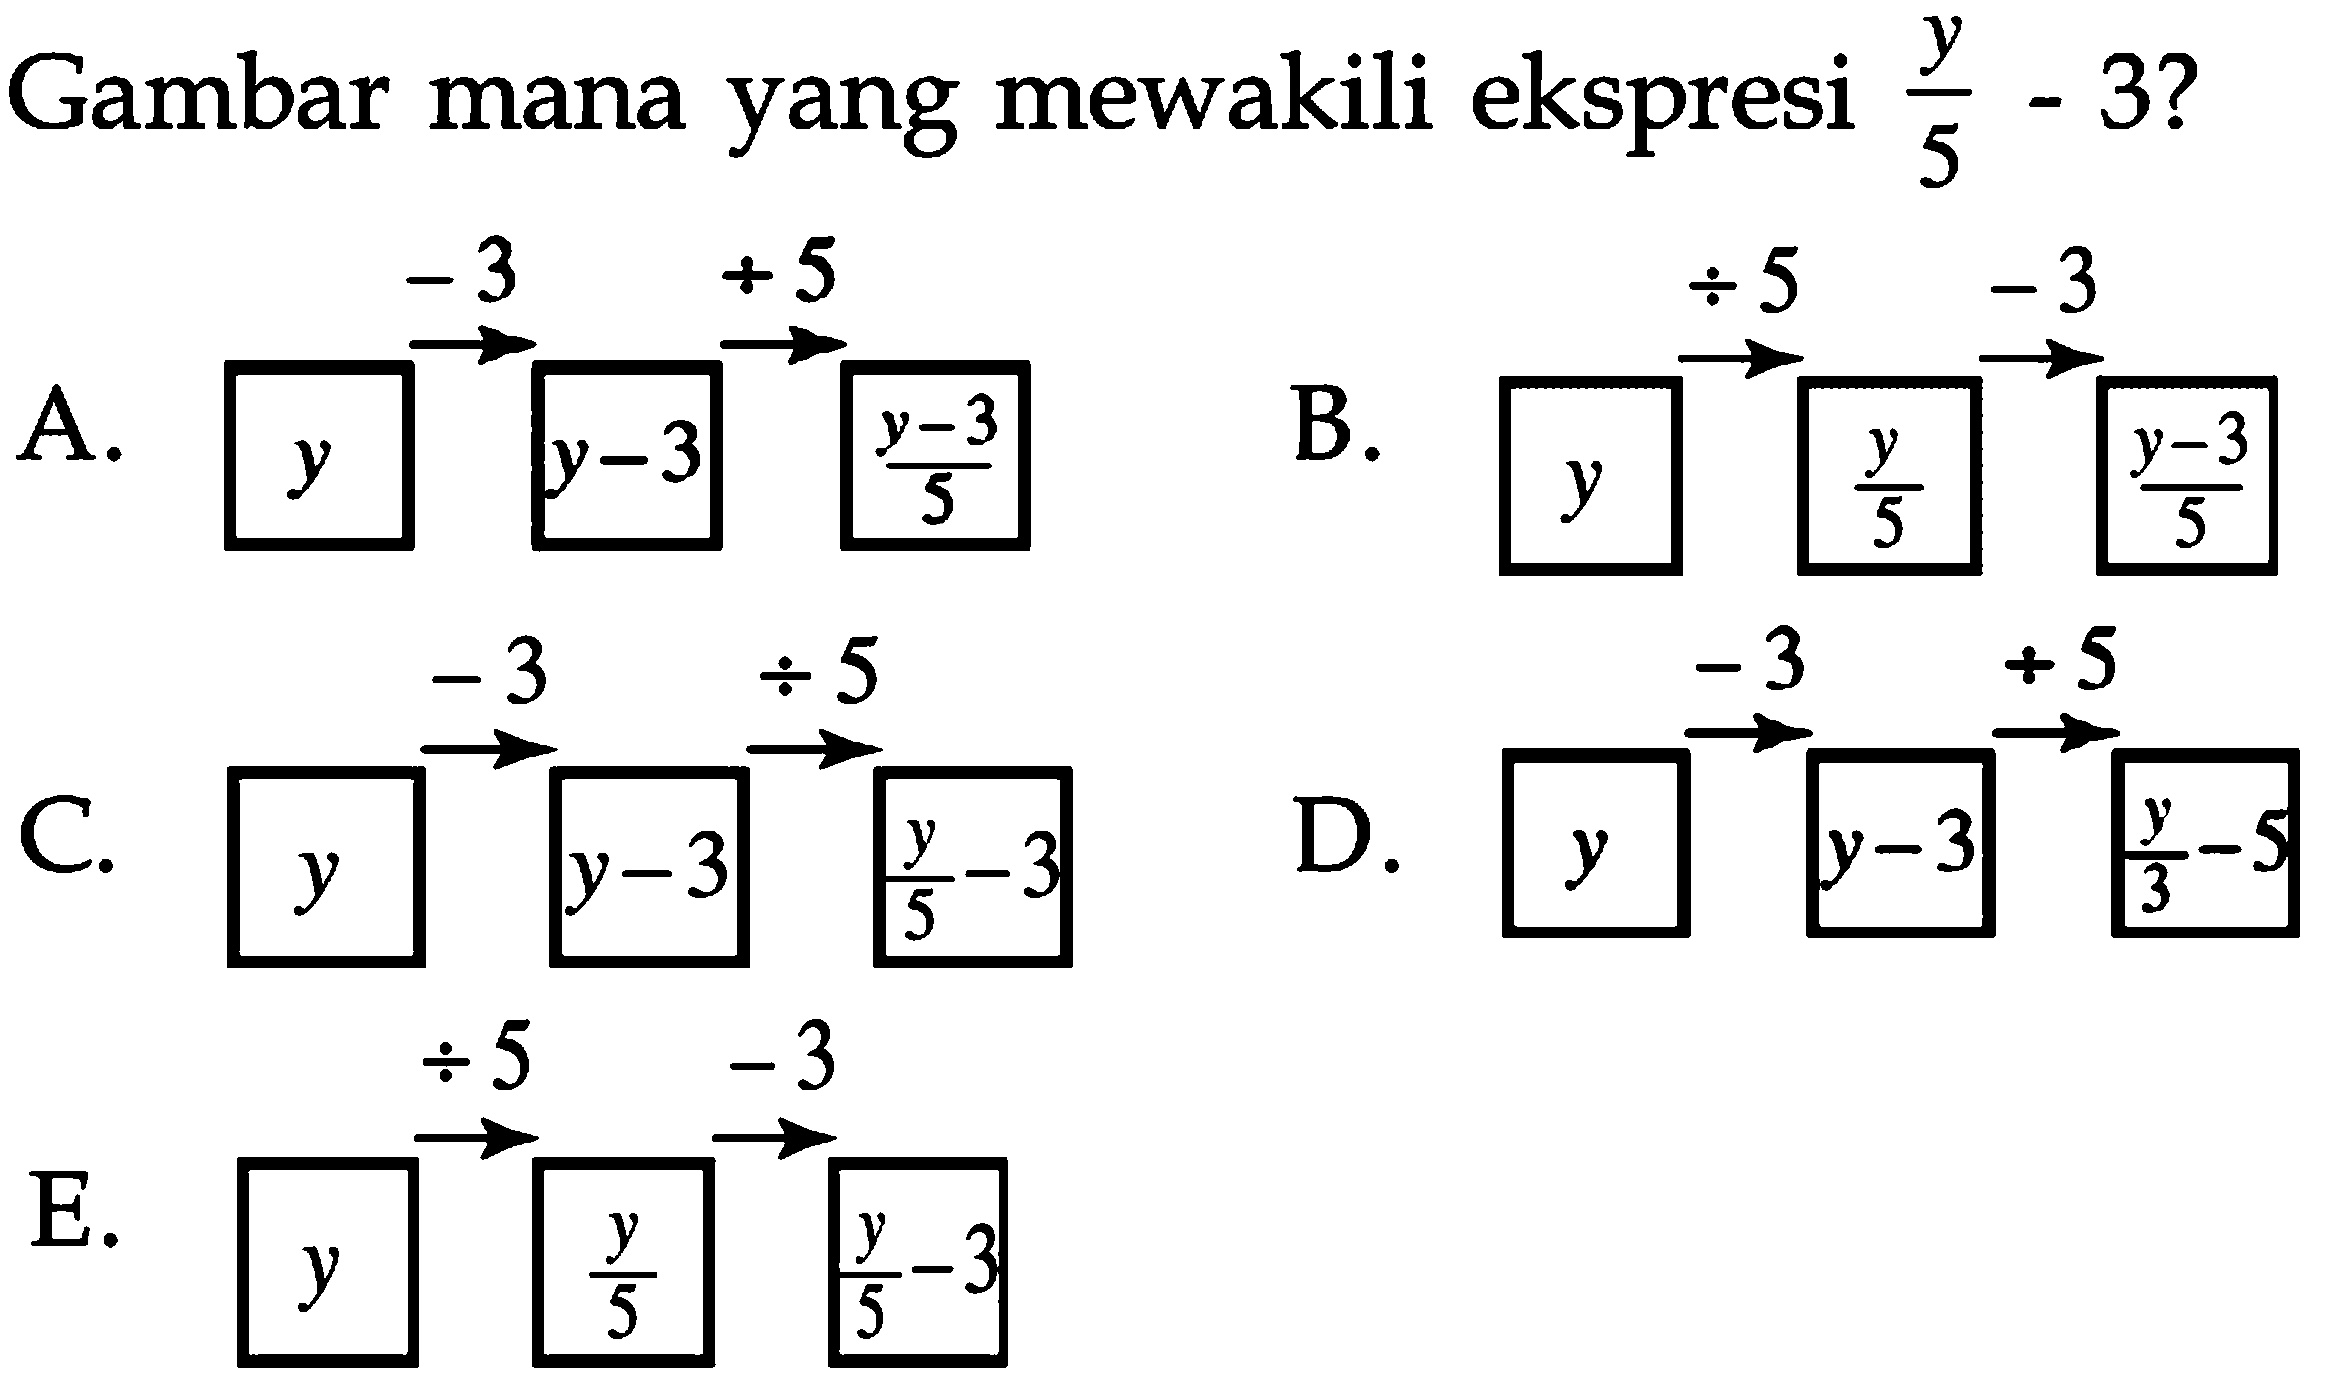 Gambar mana yang mewakili ekspresi y/5 - 3? 
A. y -3 y - 3 : 5 (y - 3)/5 
B. y : 5 y/5 -3 (y - 3)/5 
C. y -3 y - 3 : 5 y/5 - 3 
D. y -3 y - 3 : 5 y/3 - 5 
E. y : 5 y/5 -3 y/5 - 3